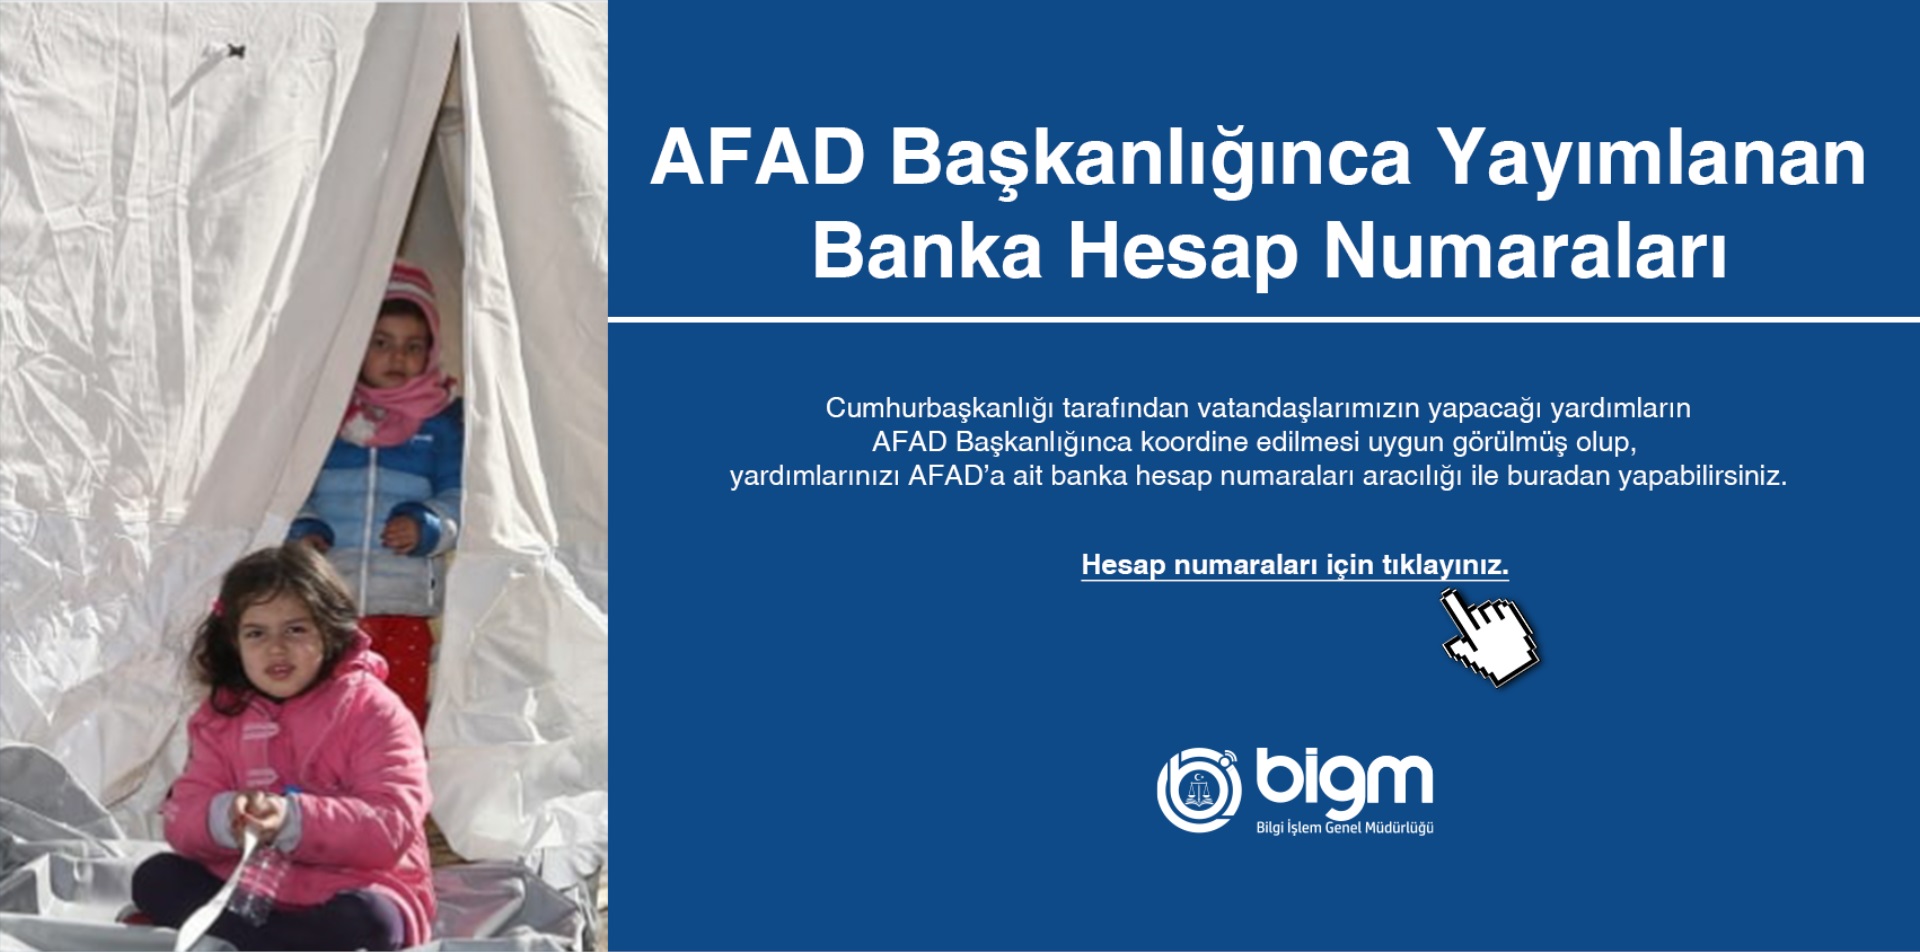 AFAD Başkanlığınca Yayımlanan Banka Hesap Numaraları